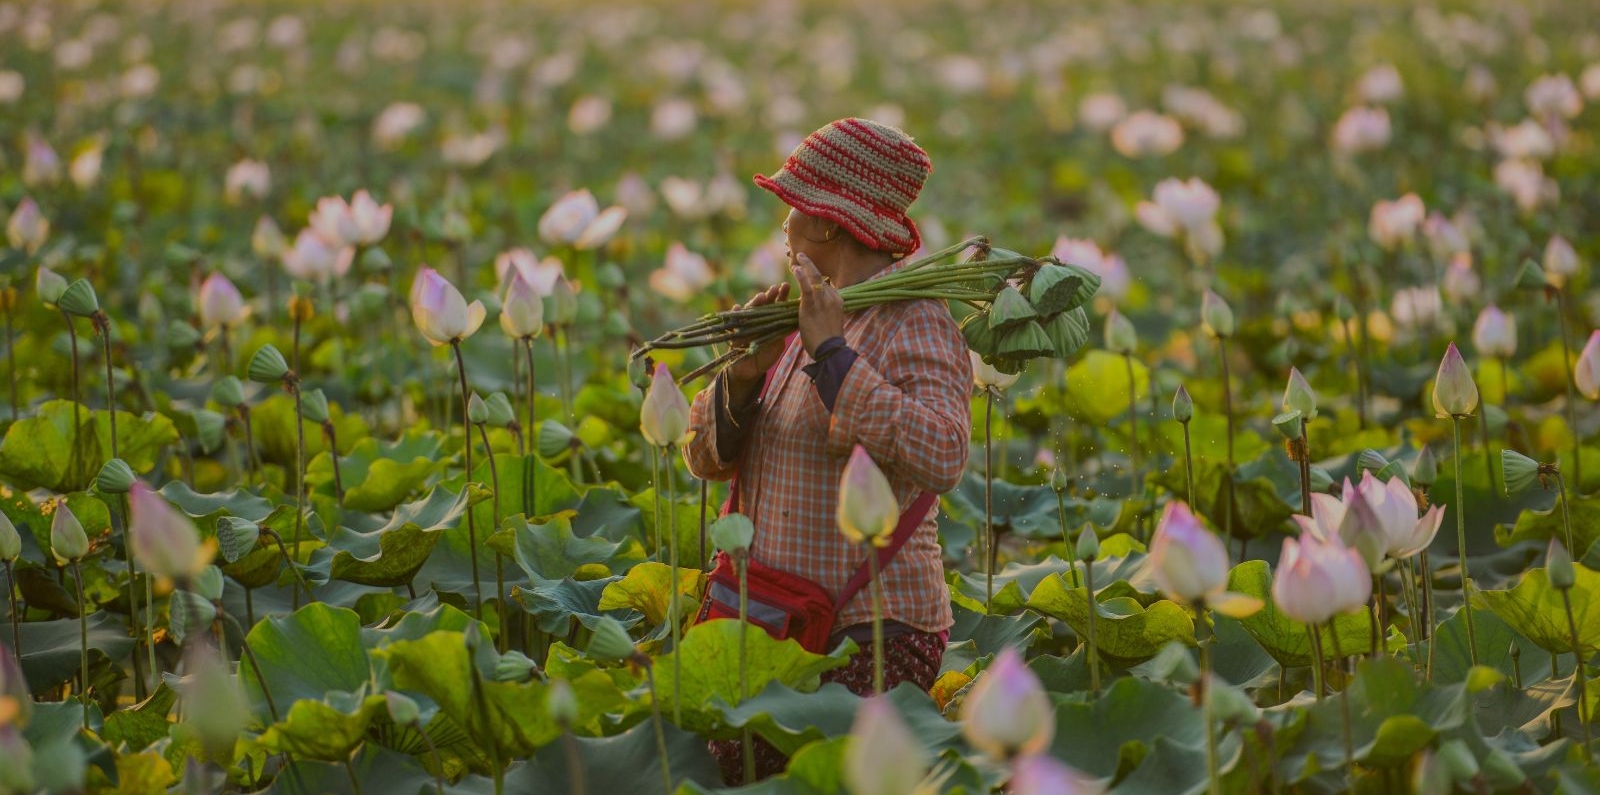 farmer in cambodia